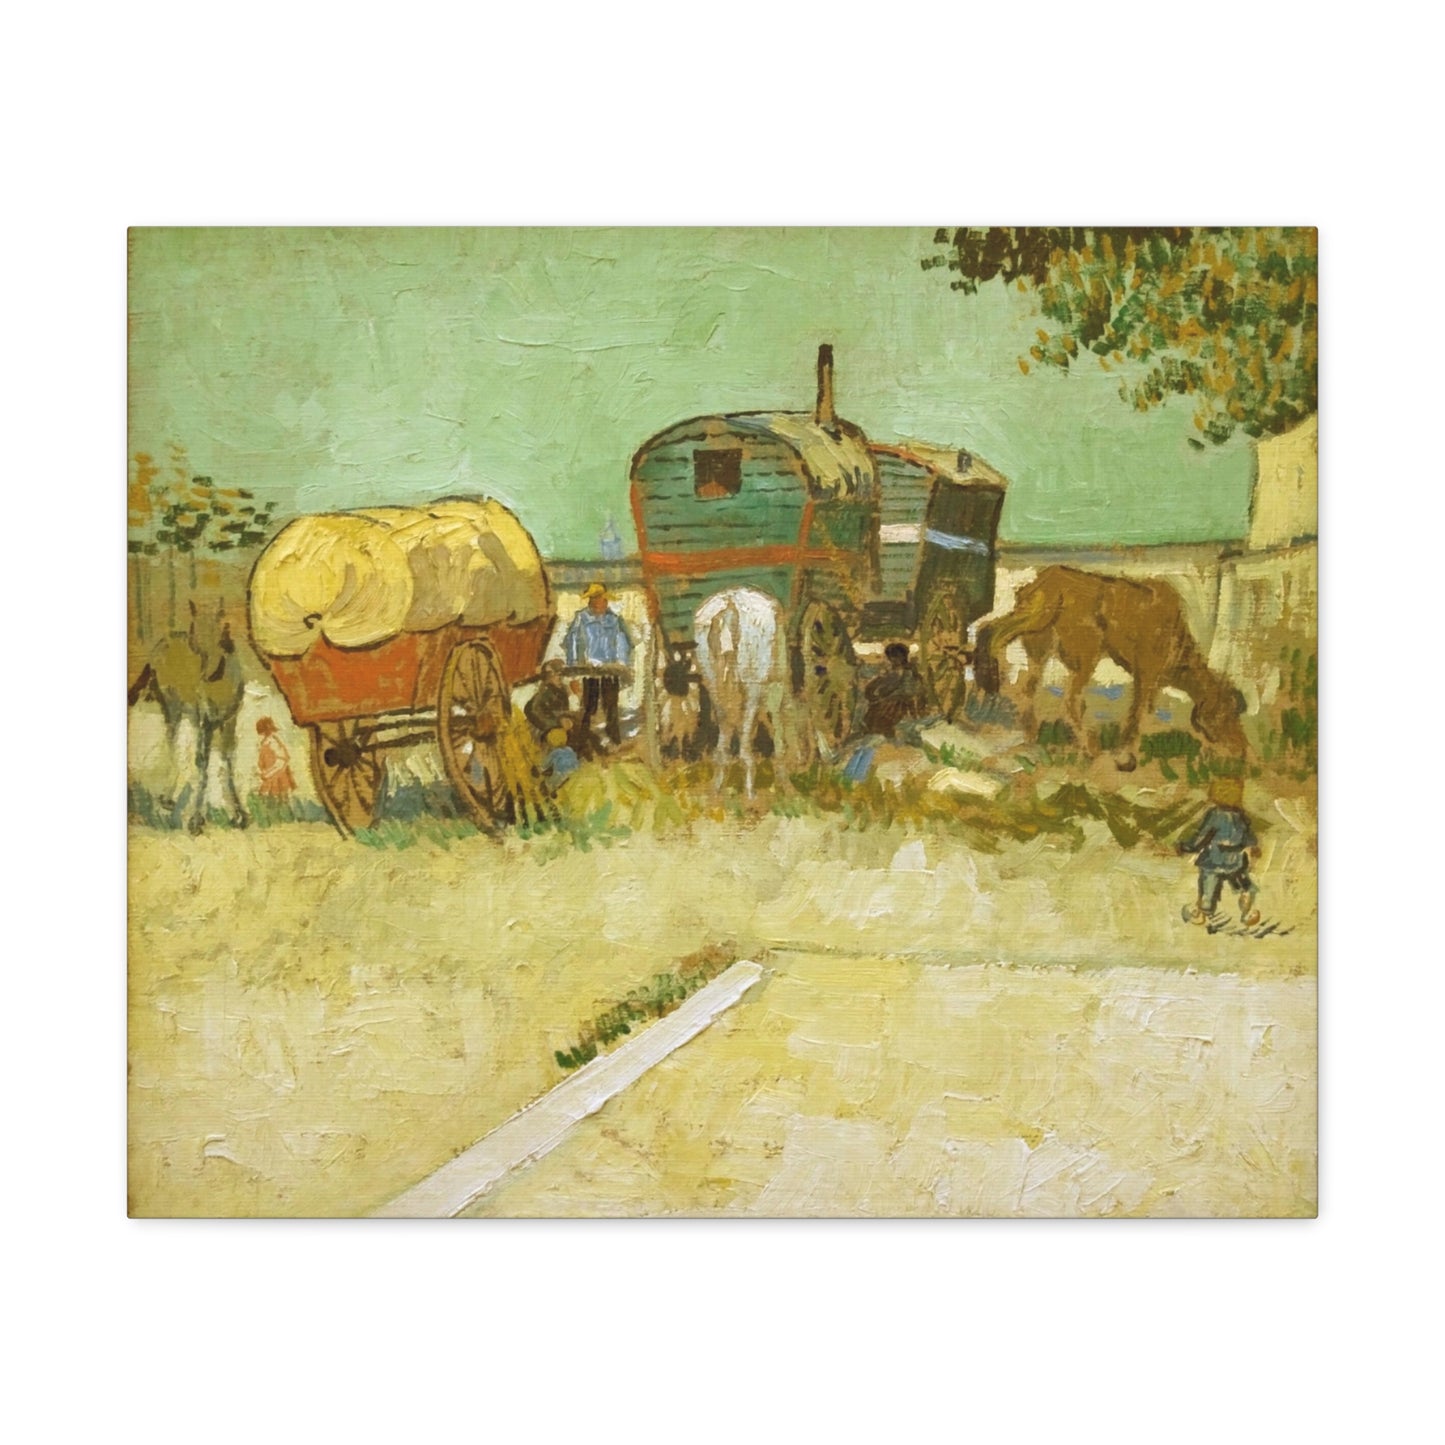 Encampment of Gypsies with Caravans - By Vincent Van Gogh